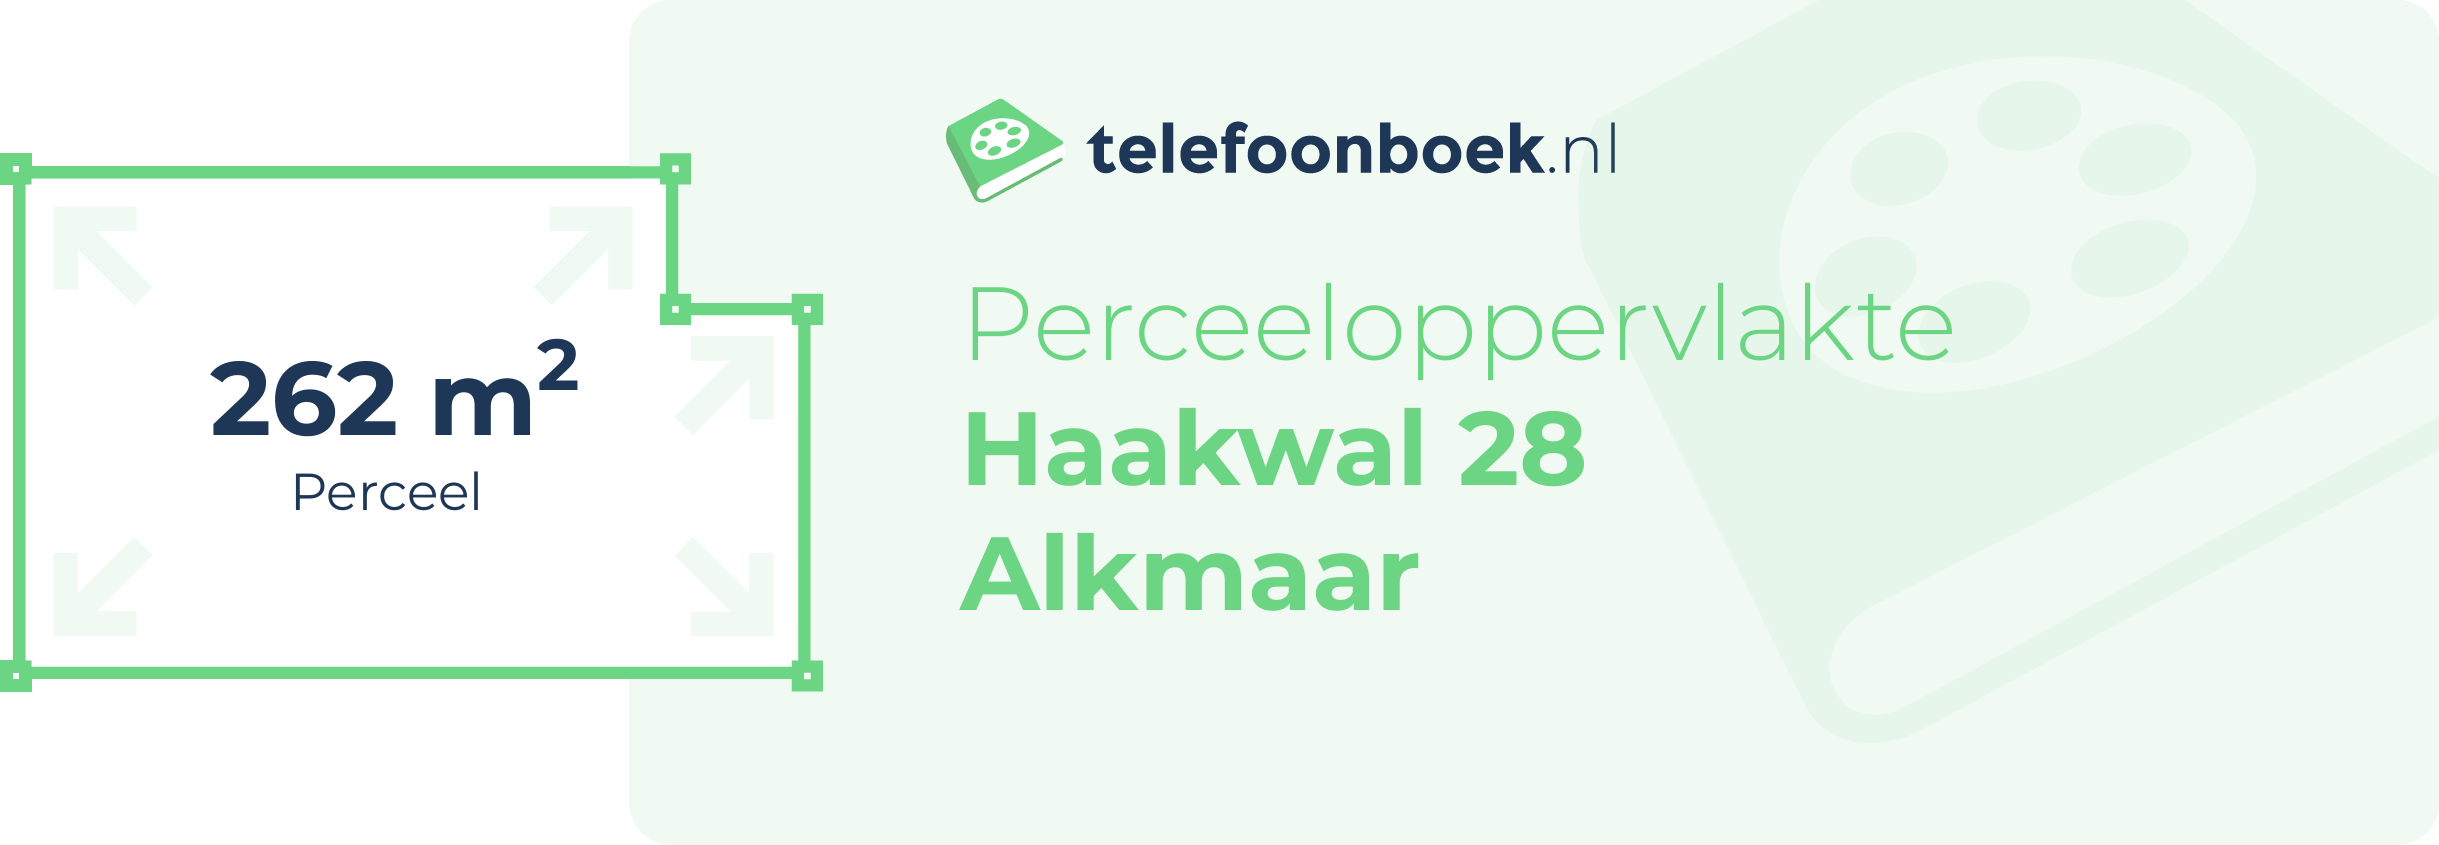 Perceeloppervlakte Haakwal 28 Alkmaar